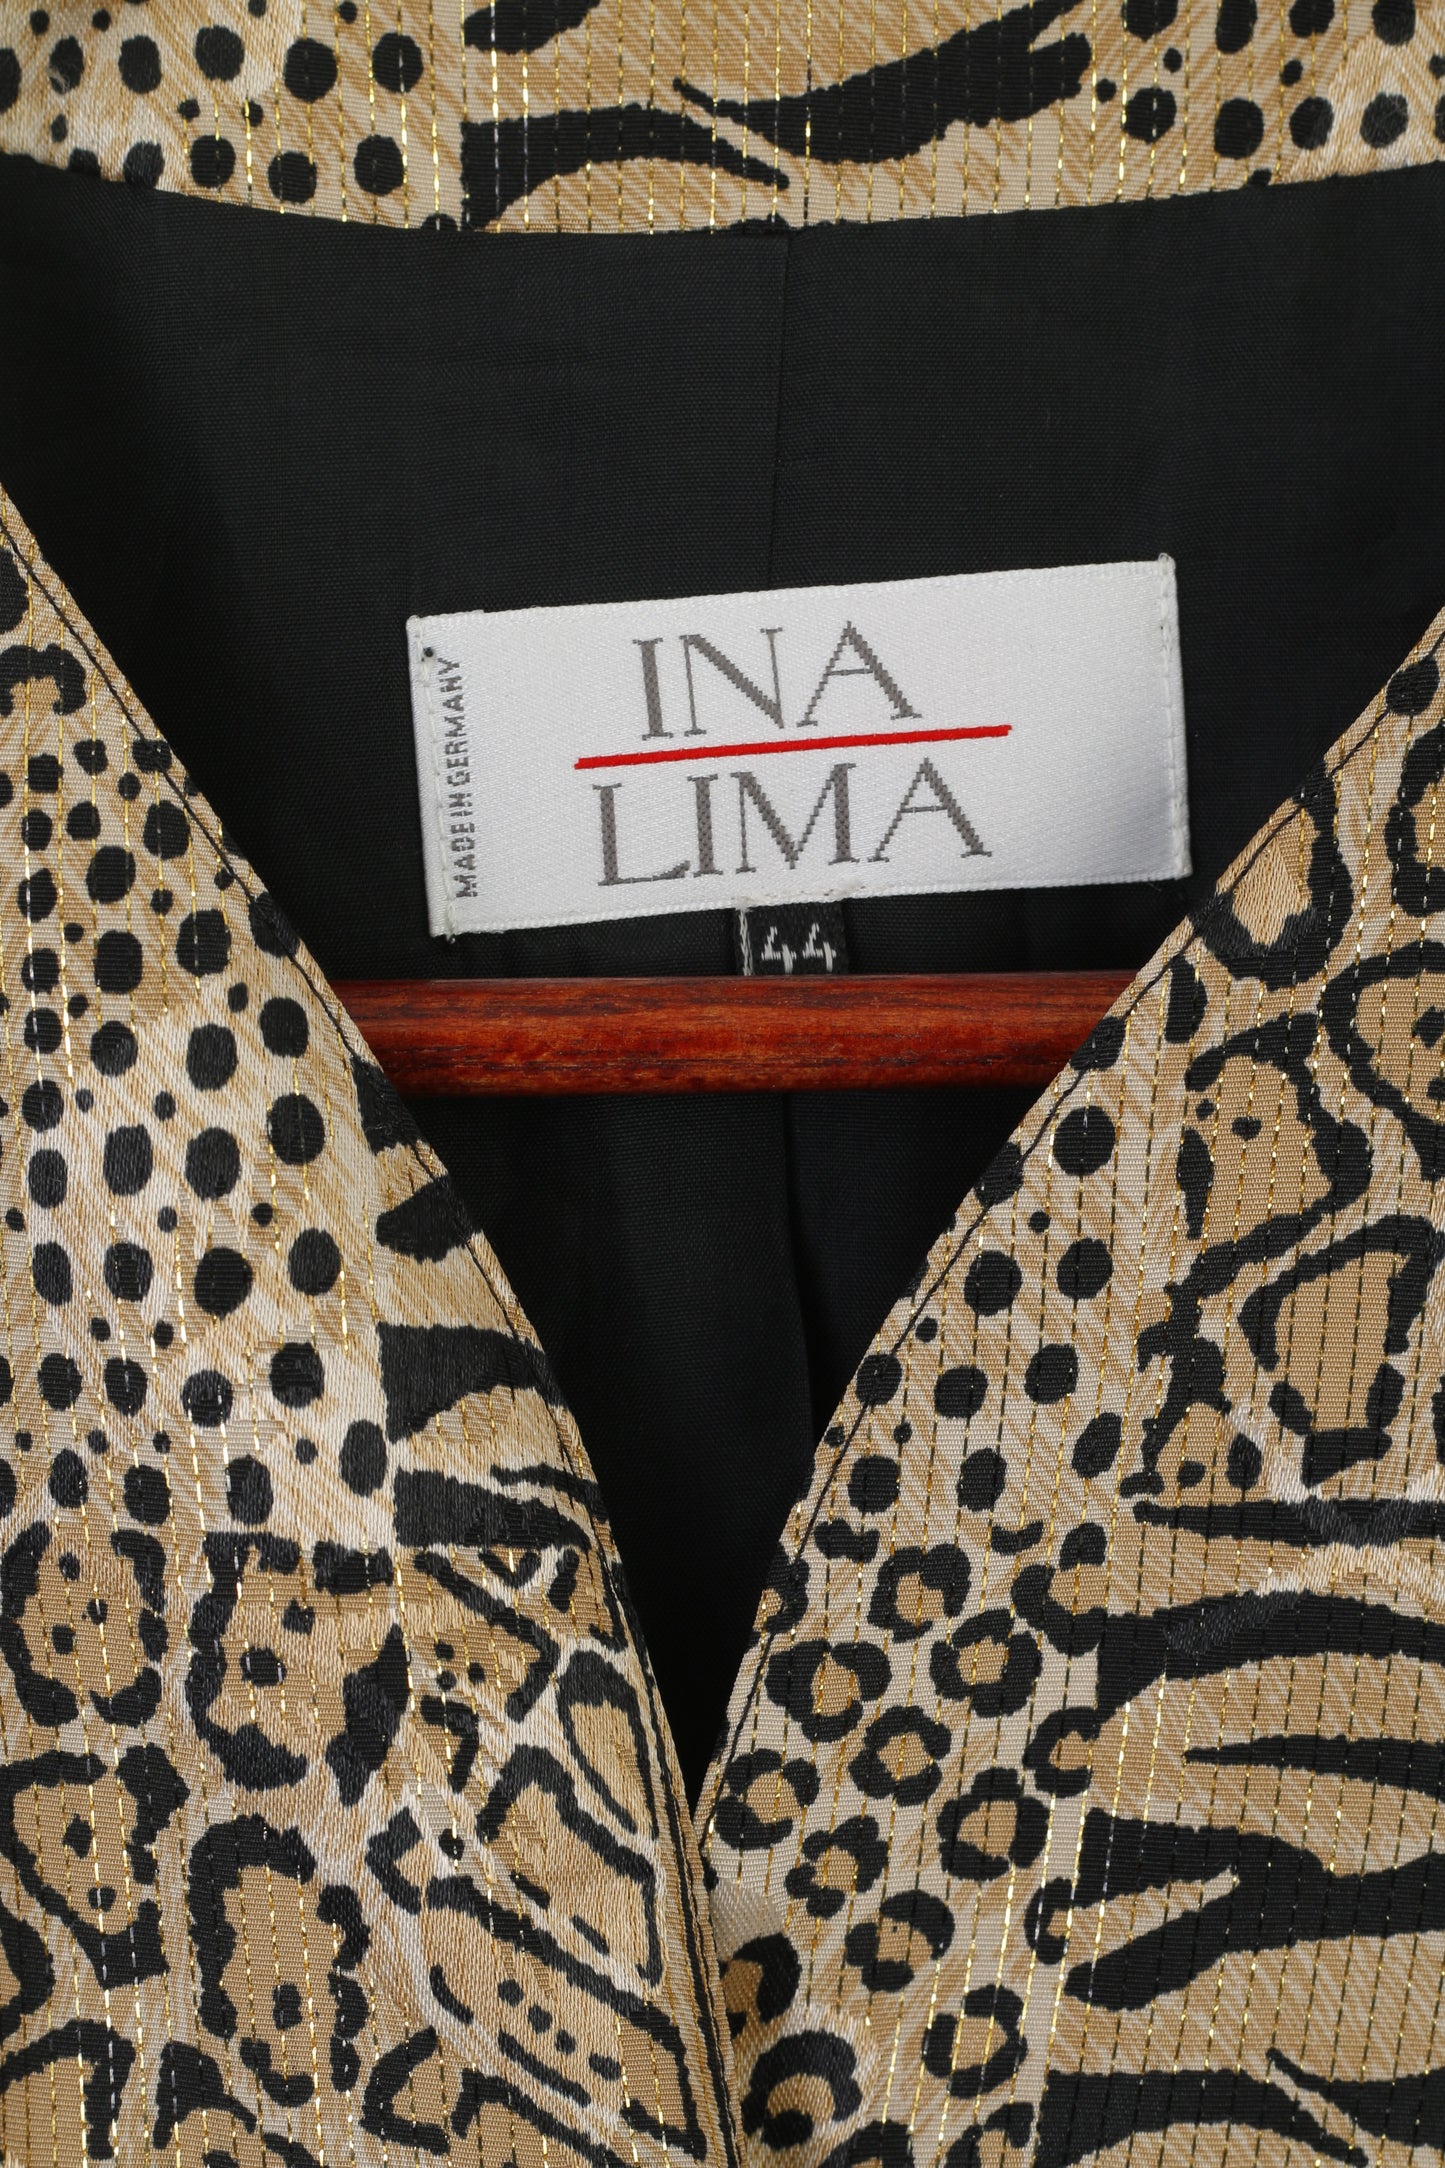 Ina Lima Women 44 L Blazer Gold Panther Print Shiny Gold Buttons Vintage Germany Jacket